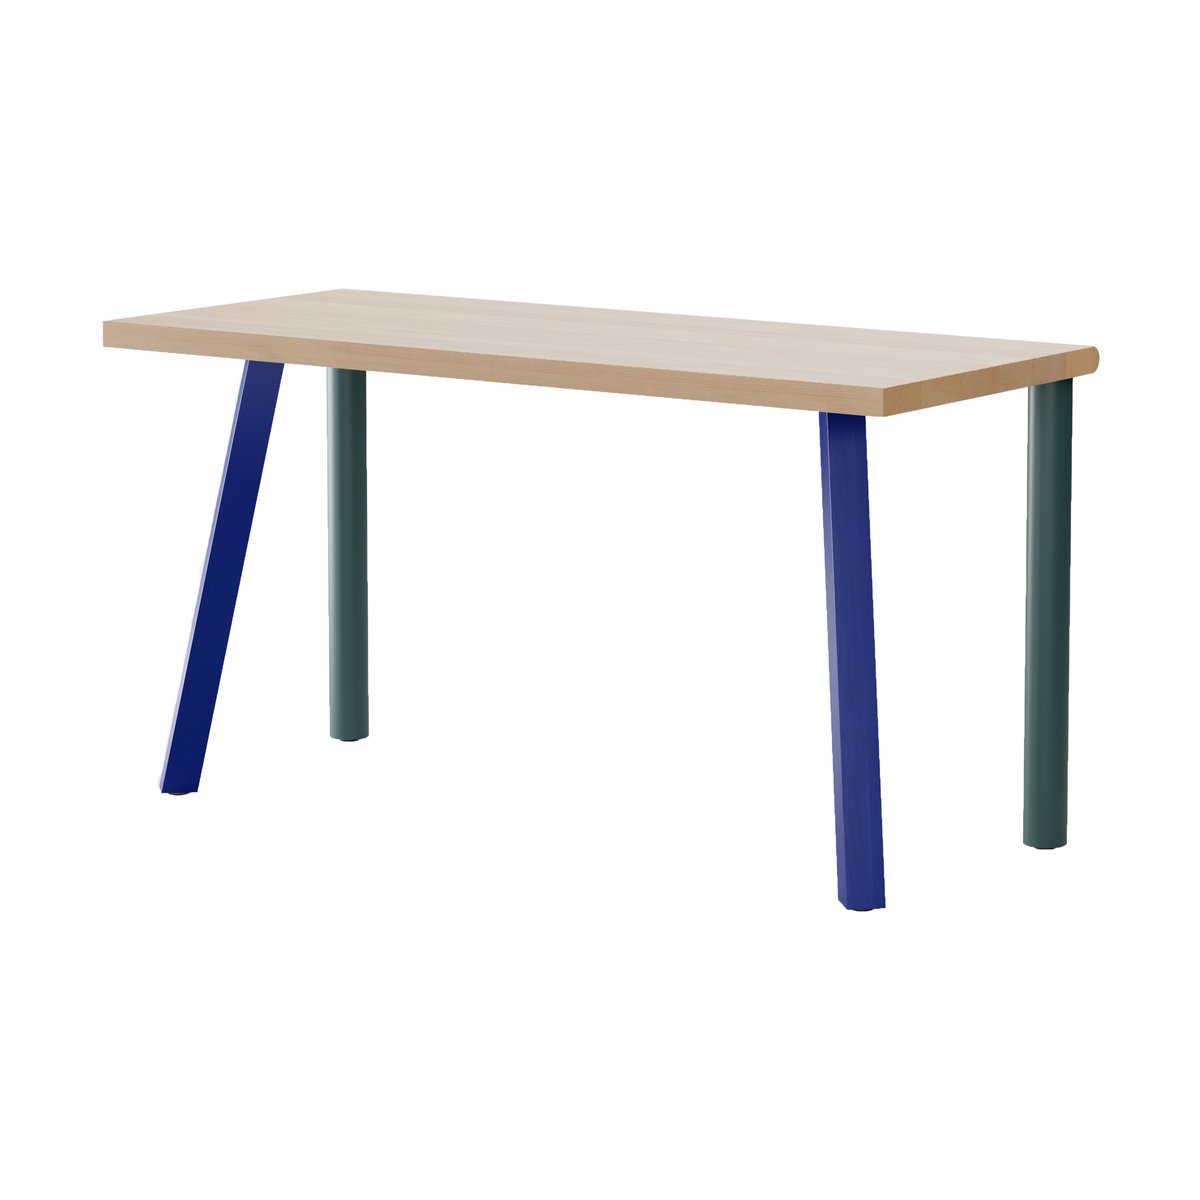 Massproductions Homework kirjoituspöytä 140×60 cm Pyökki-sininen/vihreä